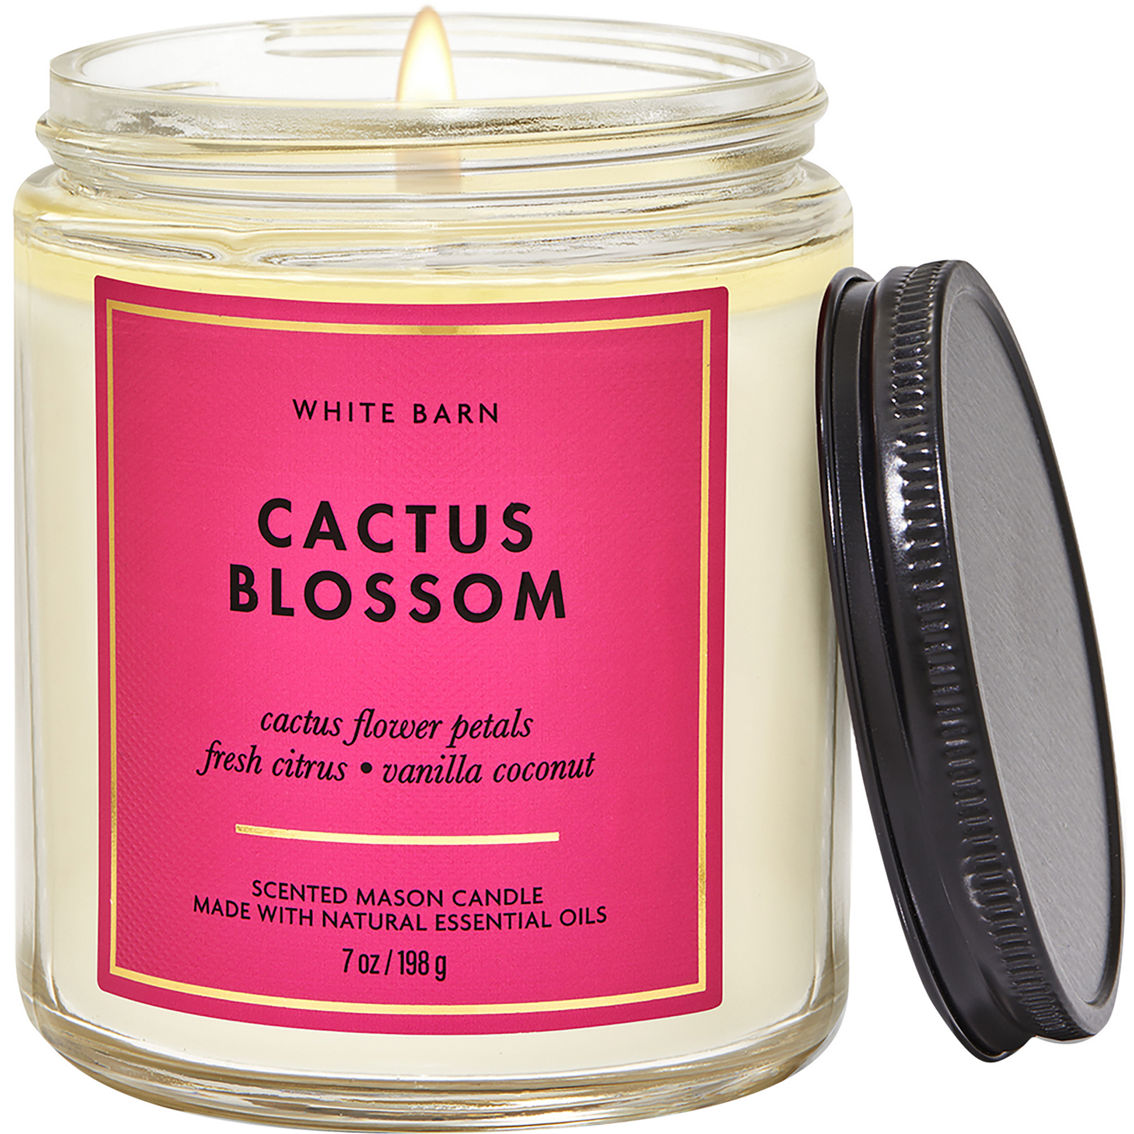 Bath & Body Works Home Cactus Blossom 2 Pc. Gift Set